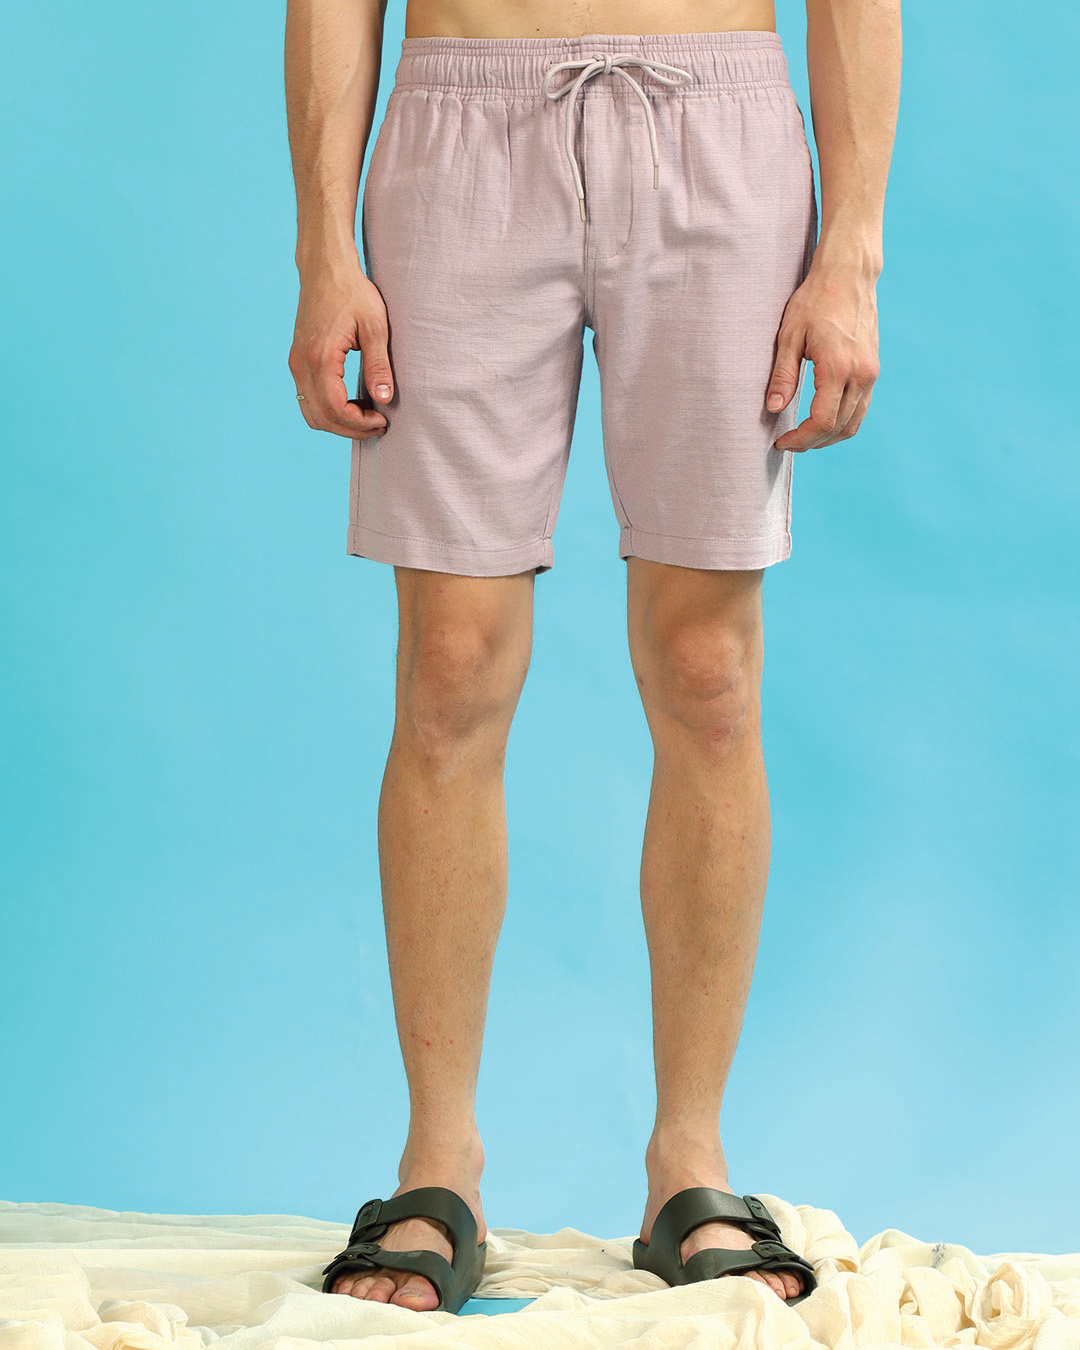 lightweight linen shorts for summer